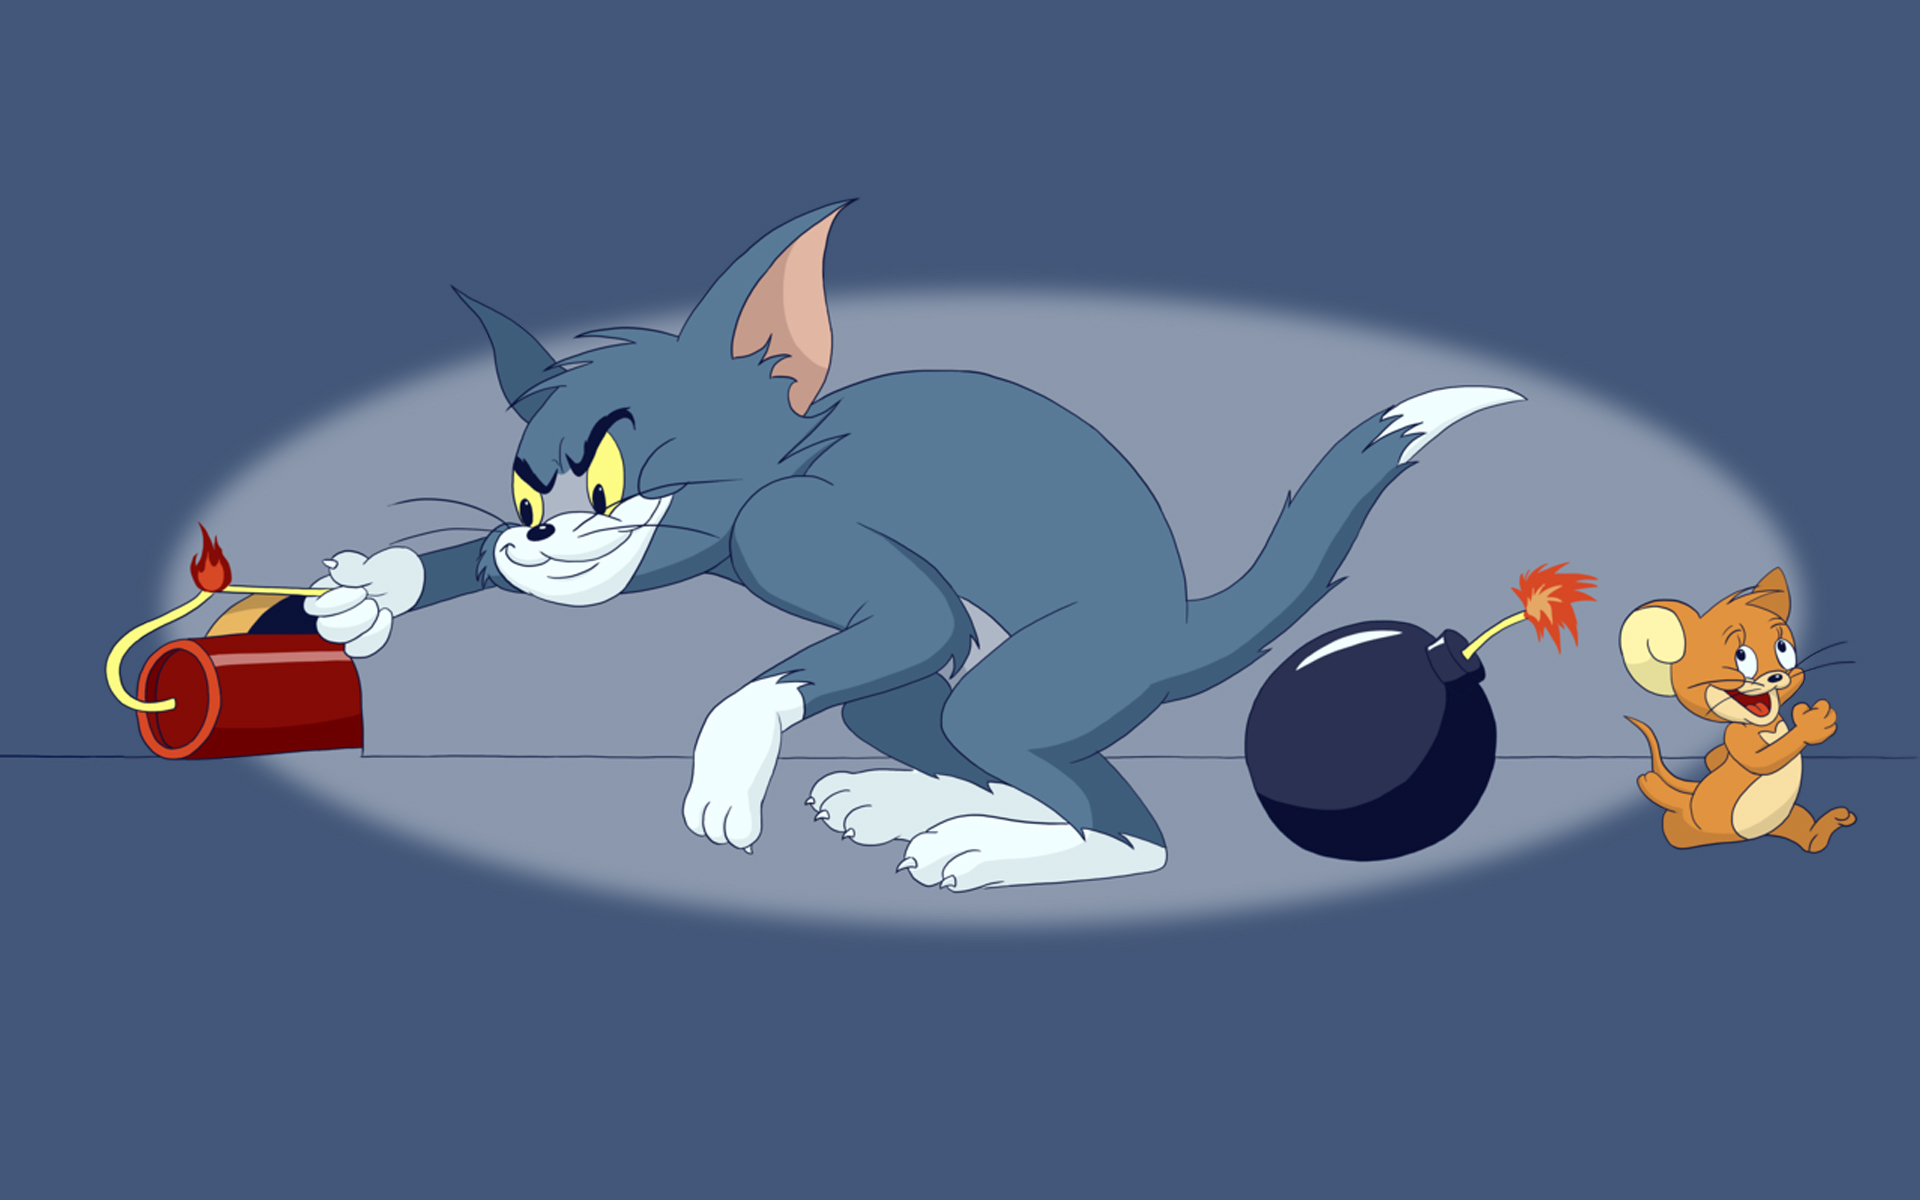 Jerry том и джерри. Tom and Jerry. Том и Джерри Tom and Jerry. Tom and Jerry 1960. ТМ И жри.